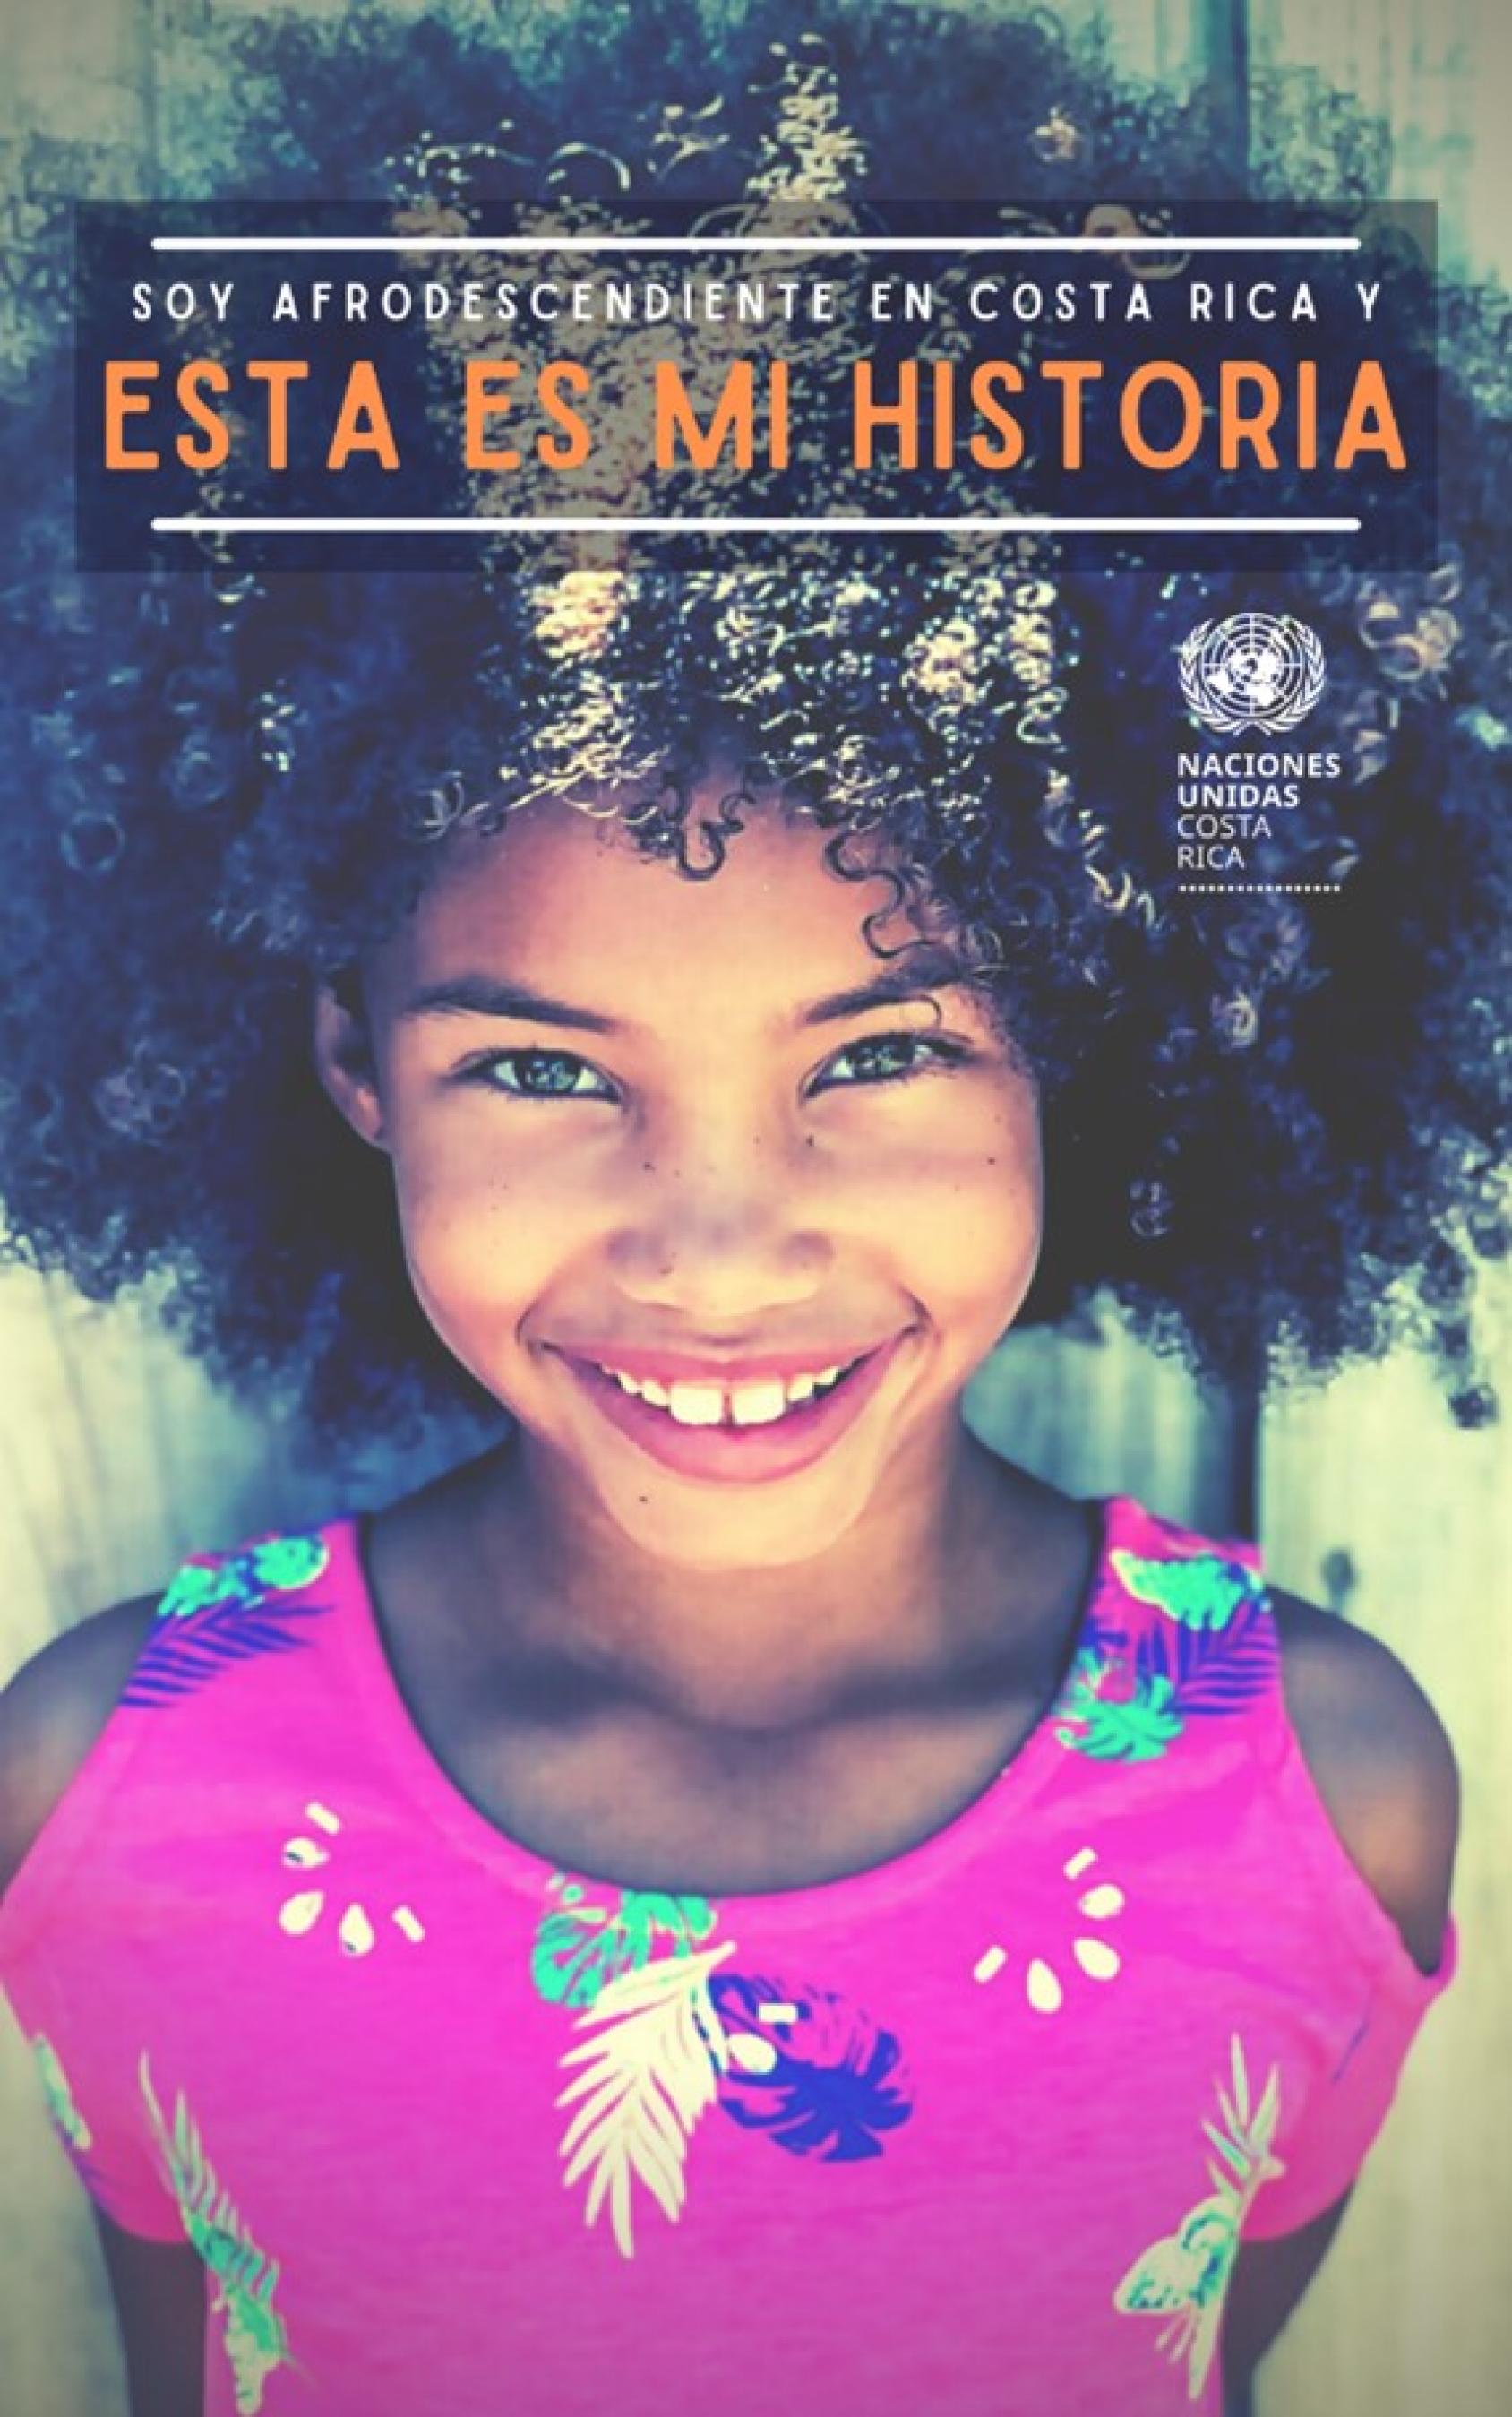 Page de couverture de la publication numérique intitulée “Soy Afrodescendiente en Costa Rica y esta es mi historia” (en français : "Je suis afrodescendant(e) au Costa Rica et voici mon histoire"). 